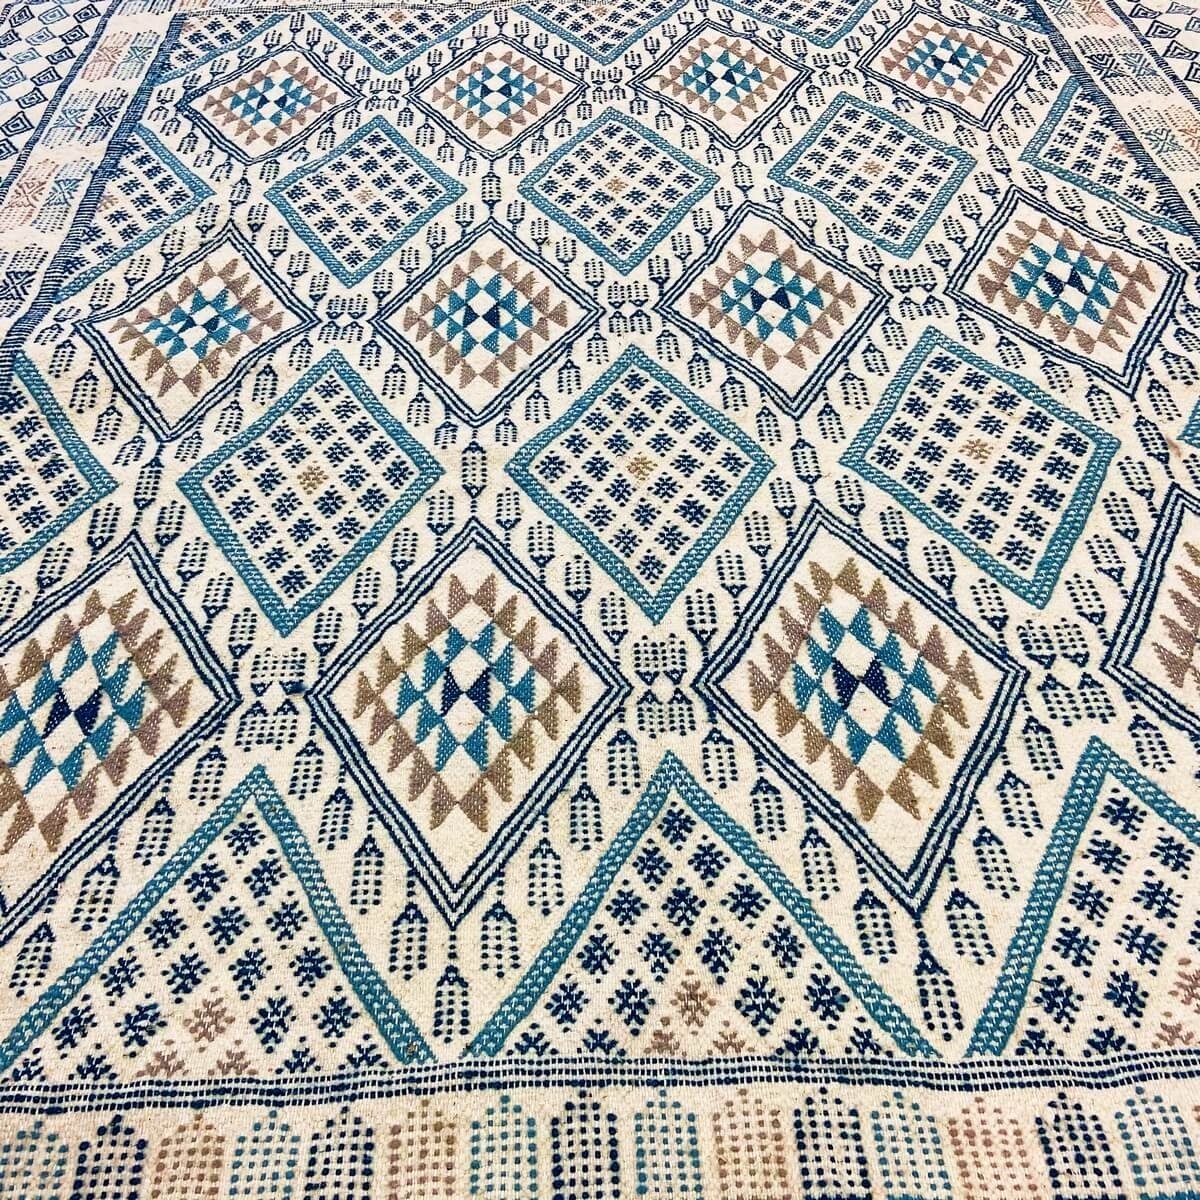 Berber tapijt Tapijt Margoum Louz 171x252 Wit/Blauw (Handgeweven, Wol, Tunesië) Tunesisch Margoum Tapijt uit de stad Kairouan. R